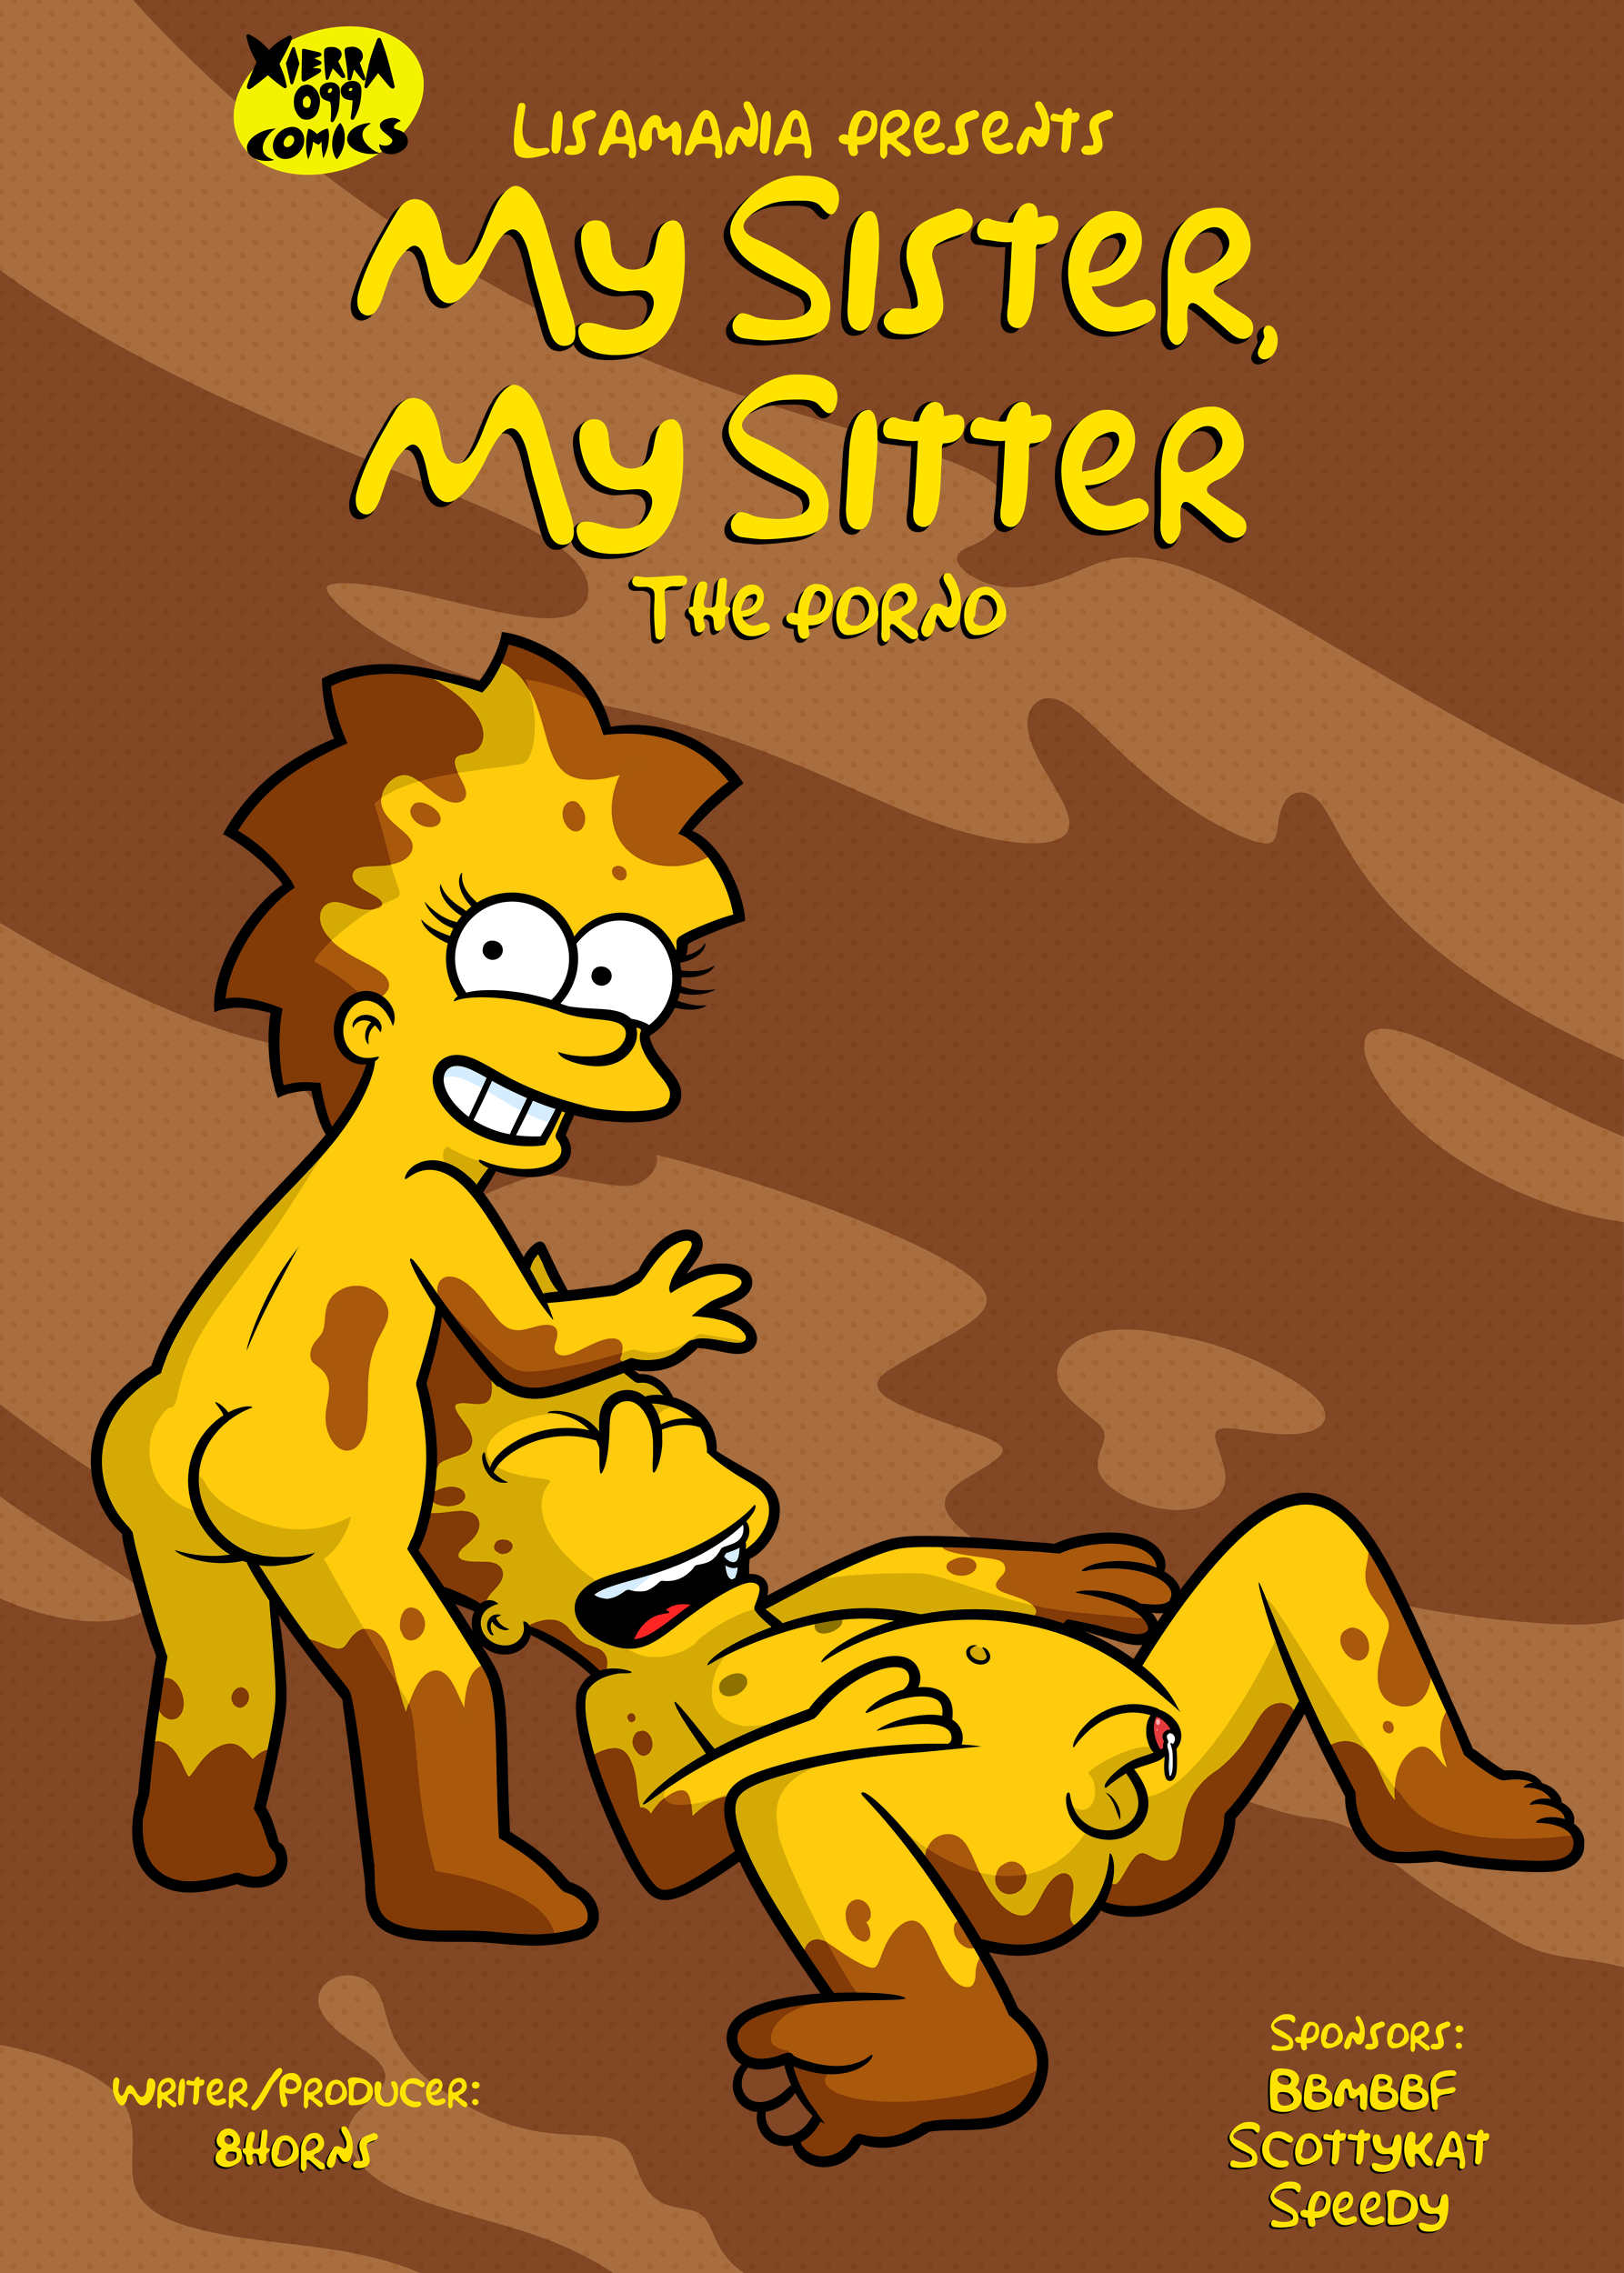 Lisa und bart simpsons nackt